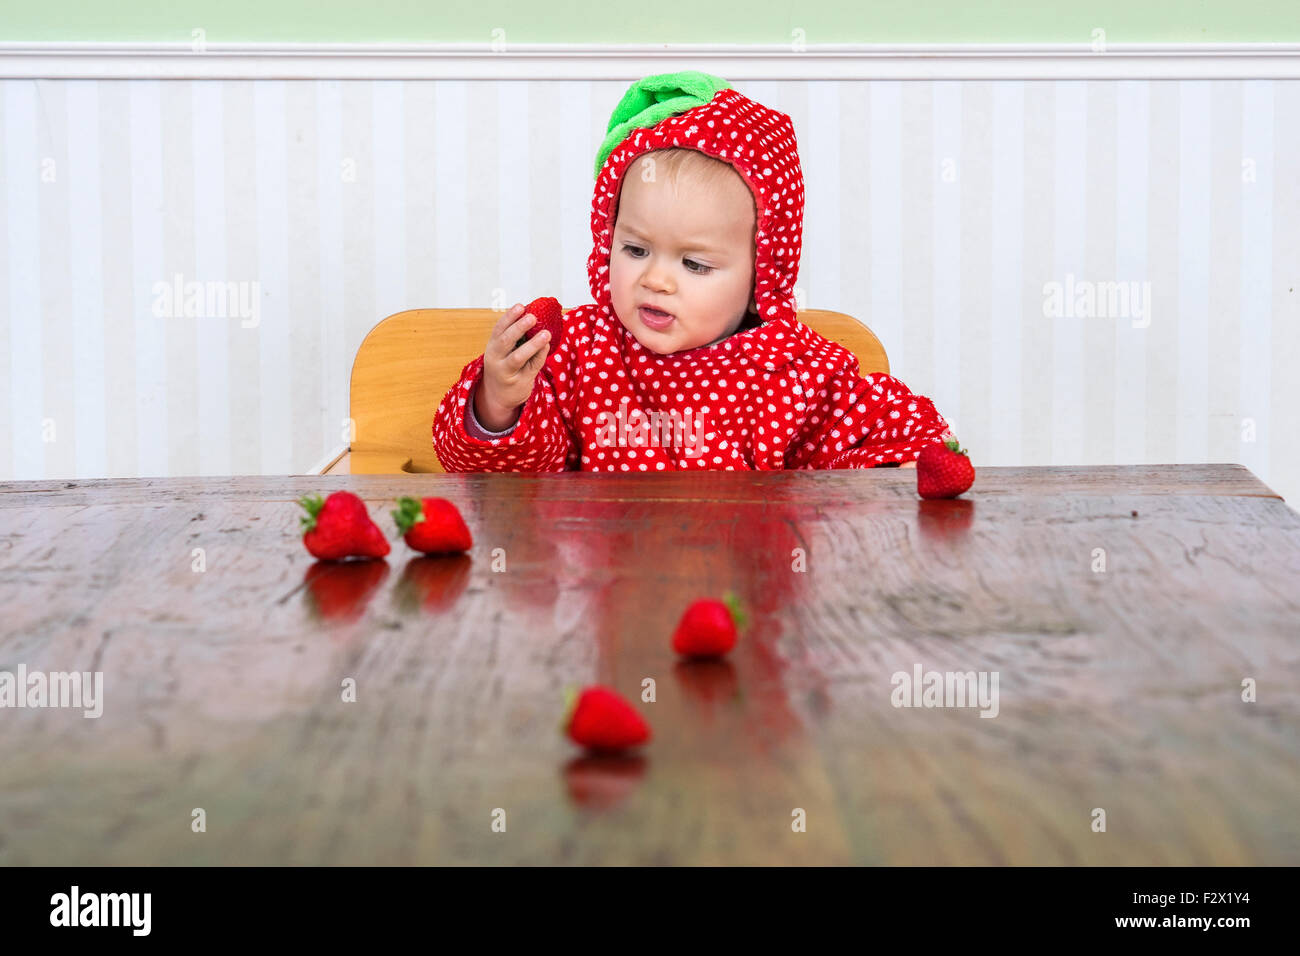 Mignon bébé en berry répondre à manger des fraises Banque D'Images